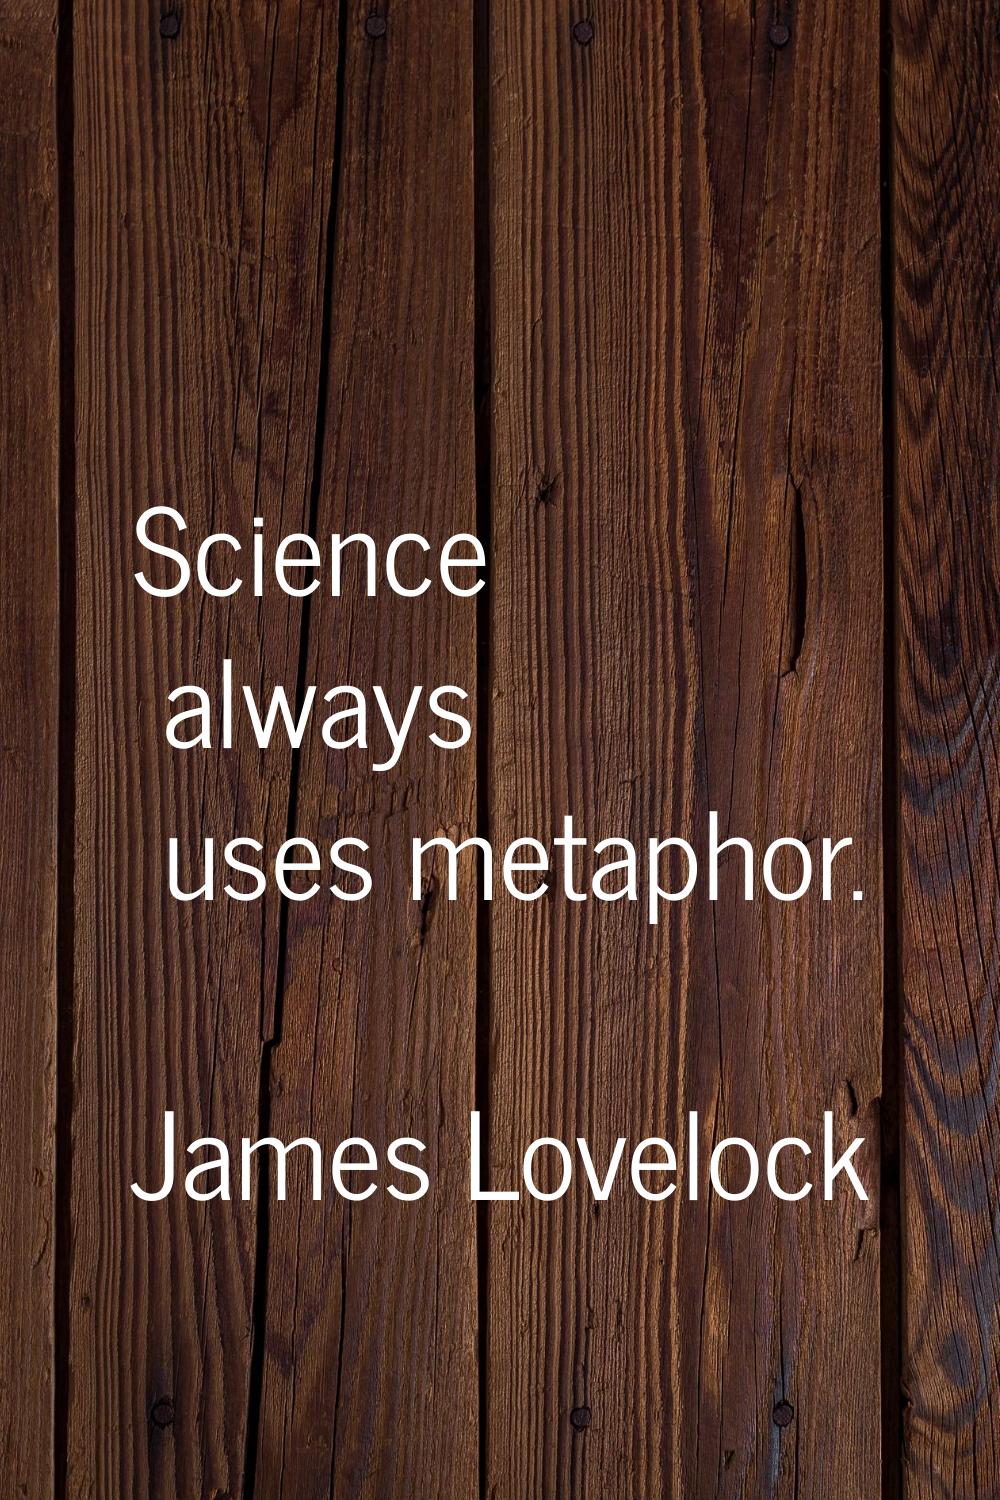 Science always uses metaphor.